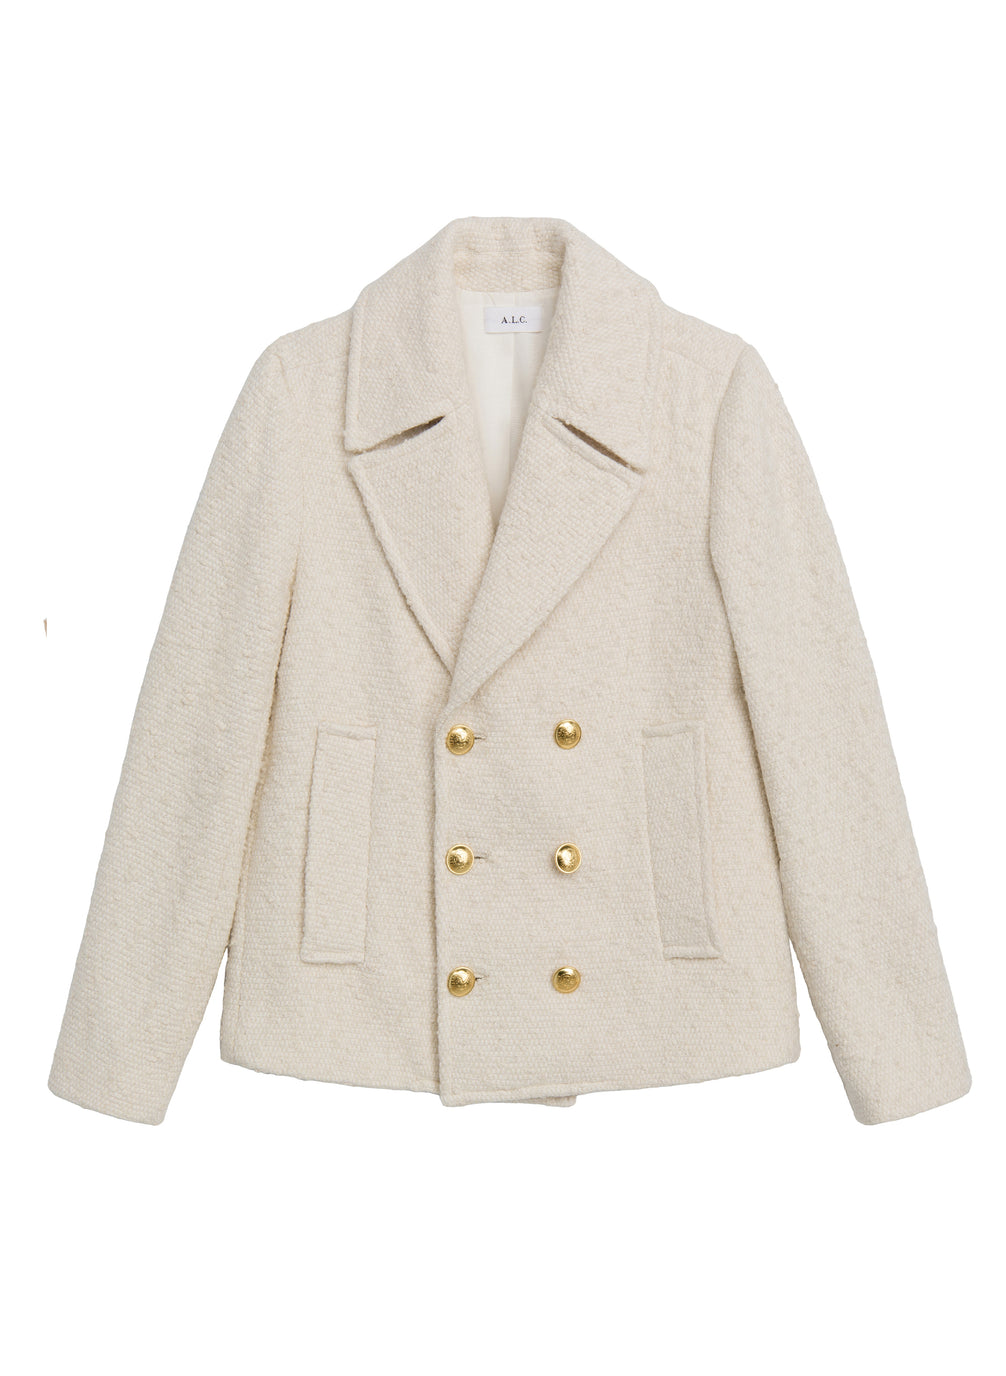 Kensington Tweed Jacket